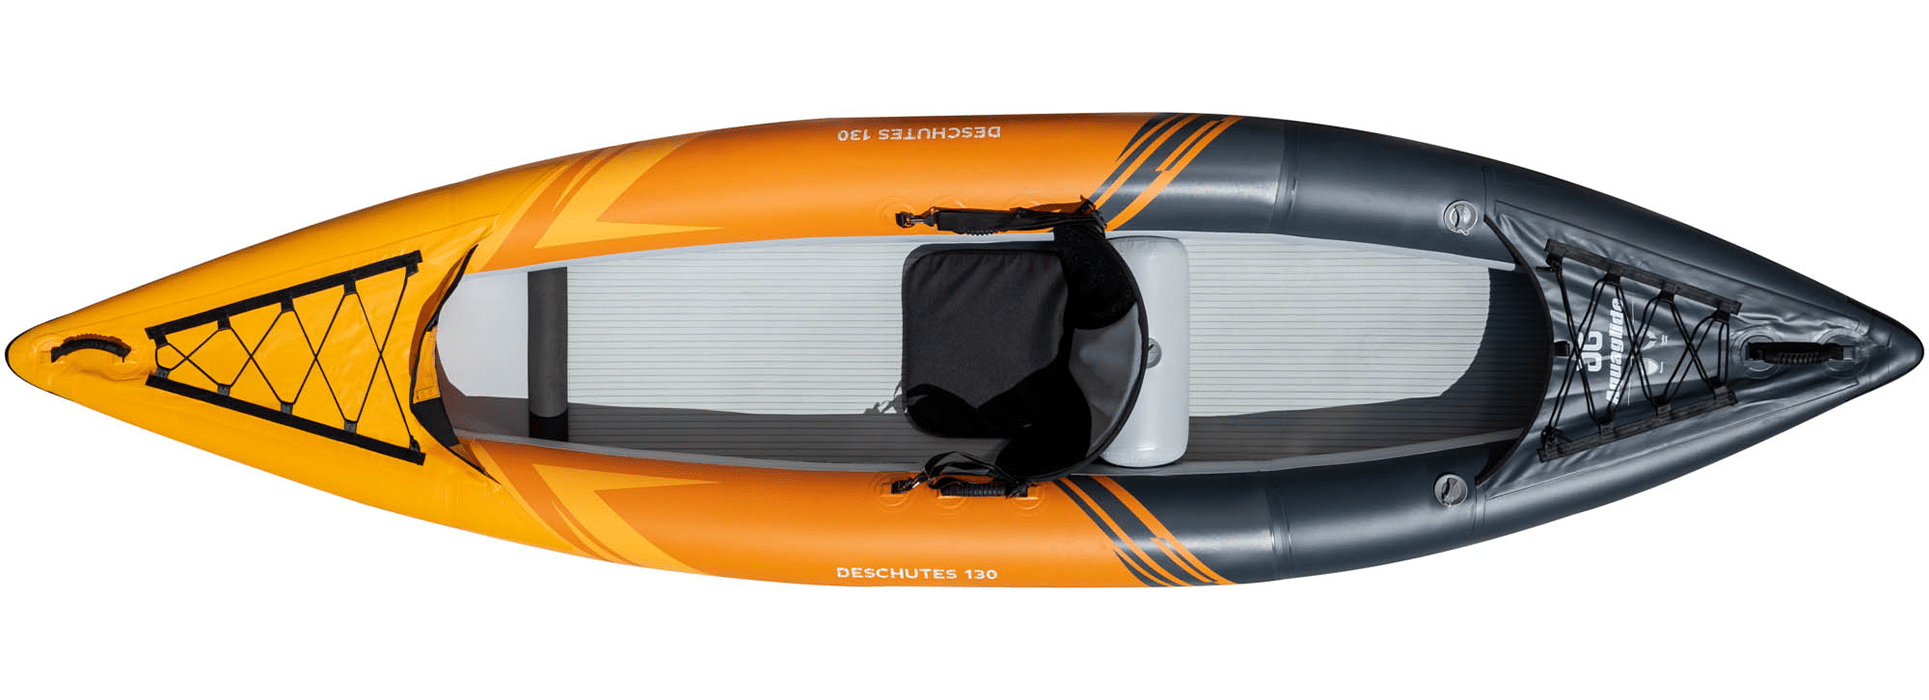 Deschutes 130 Single Inflatable Kayak